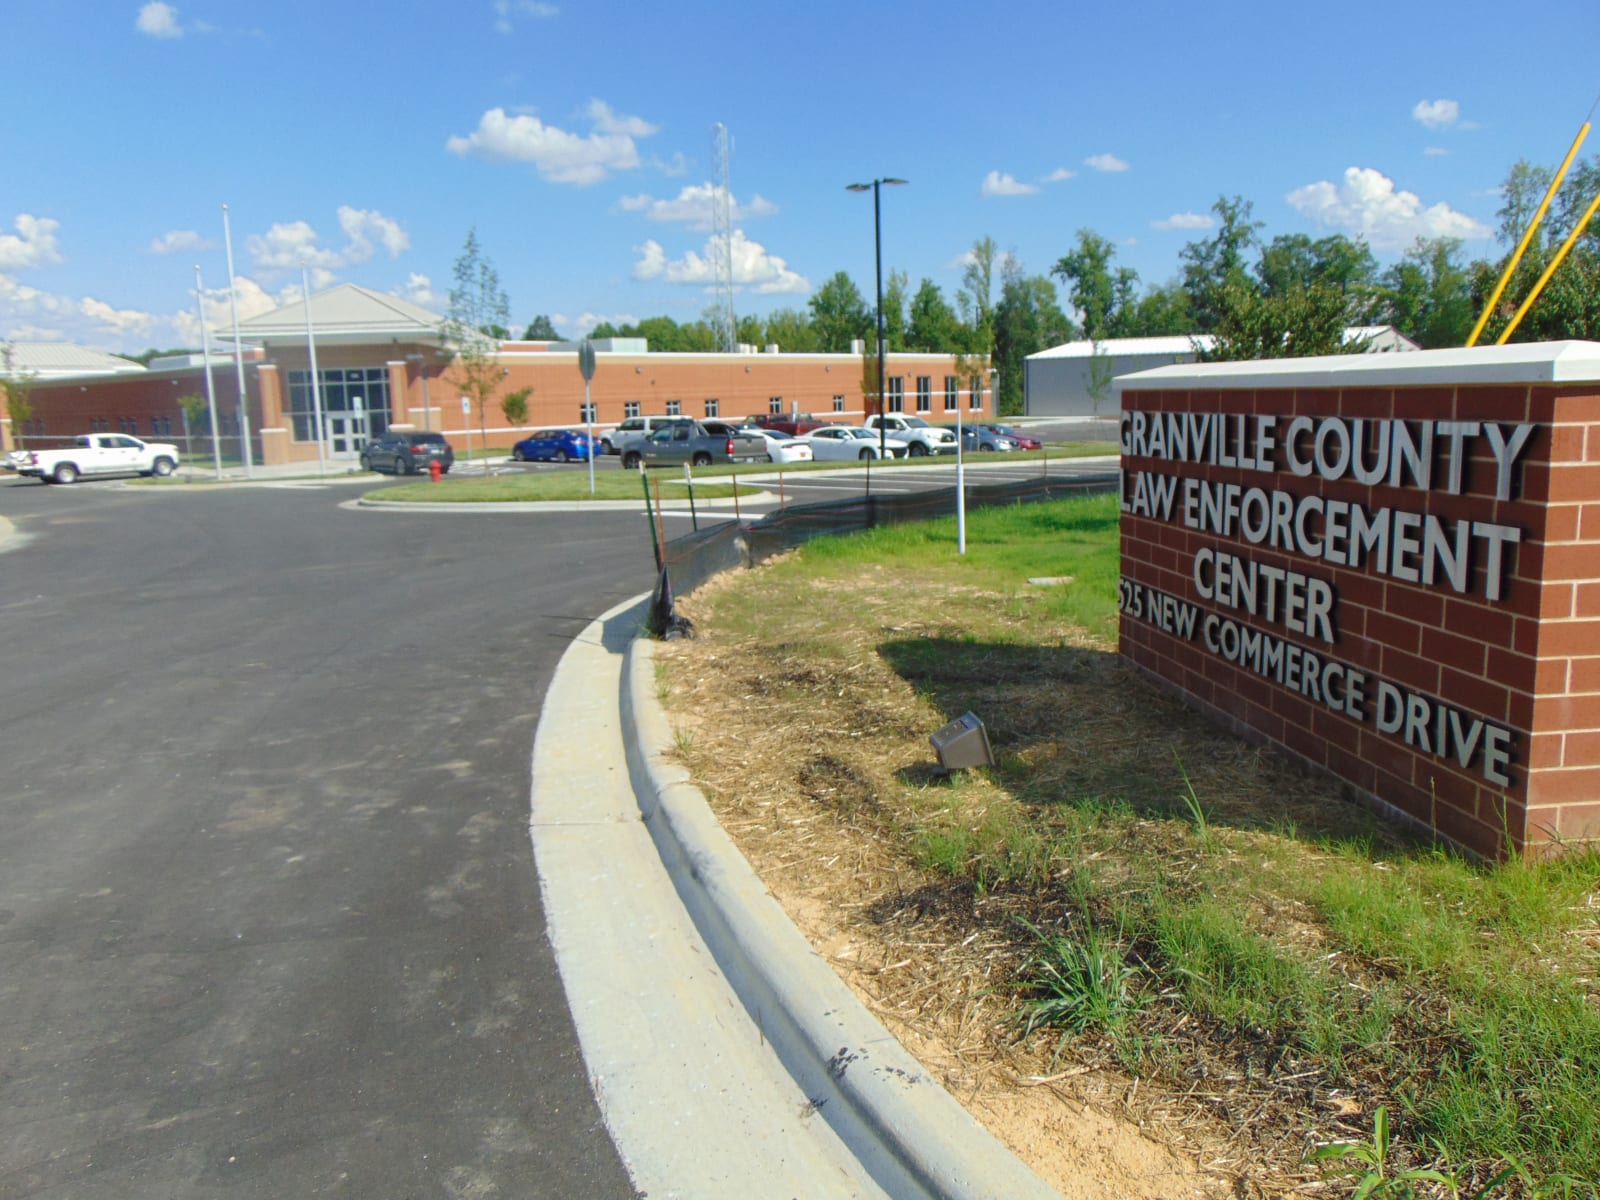 Granville Co. Law Enforcement Center